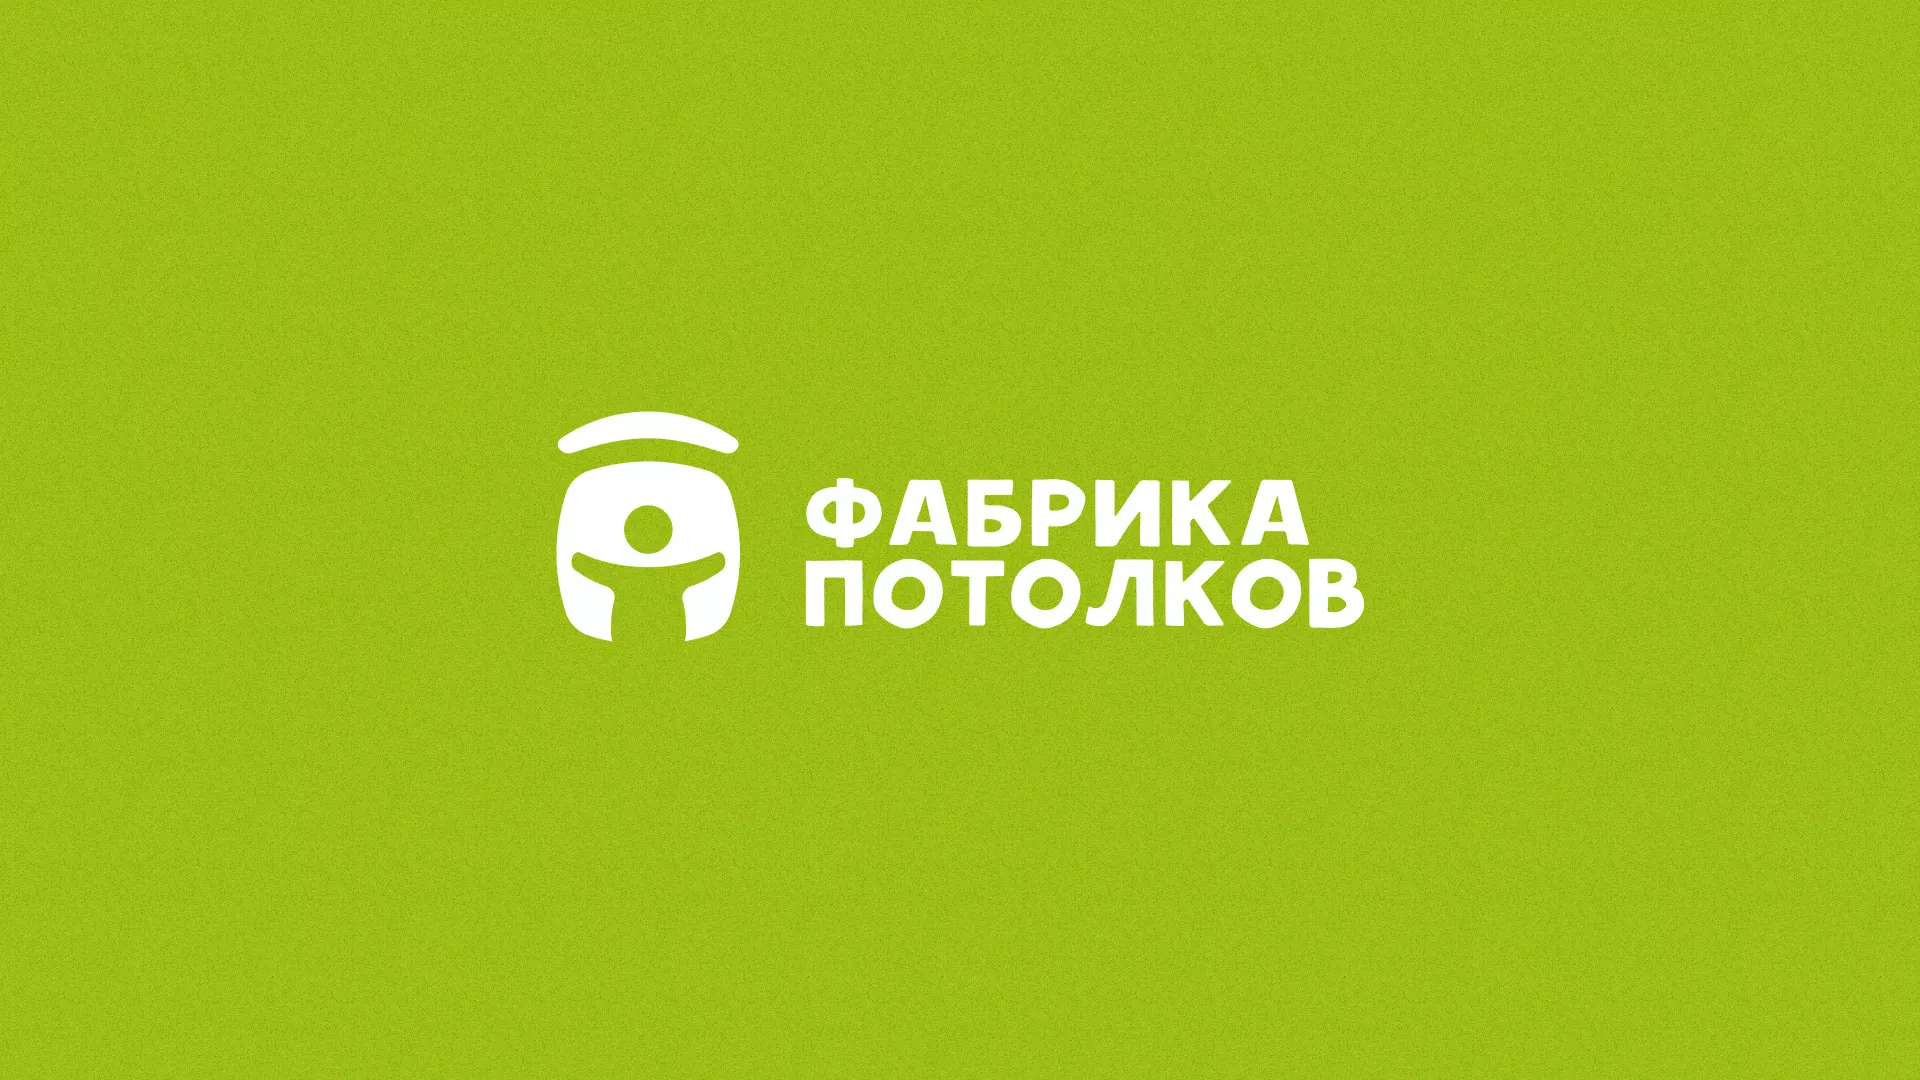 Разработка логотипа для производства натяжных потолков в Кадникове